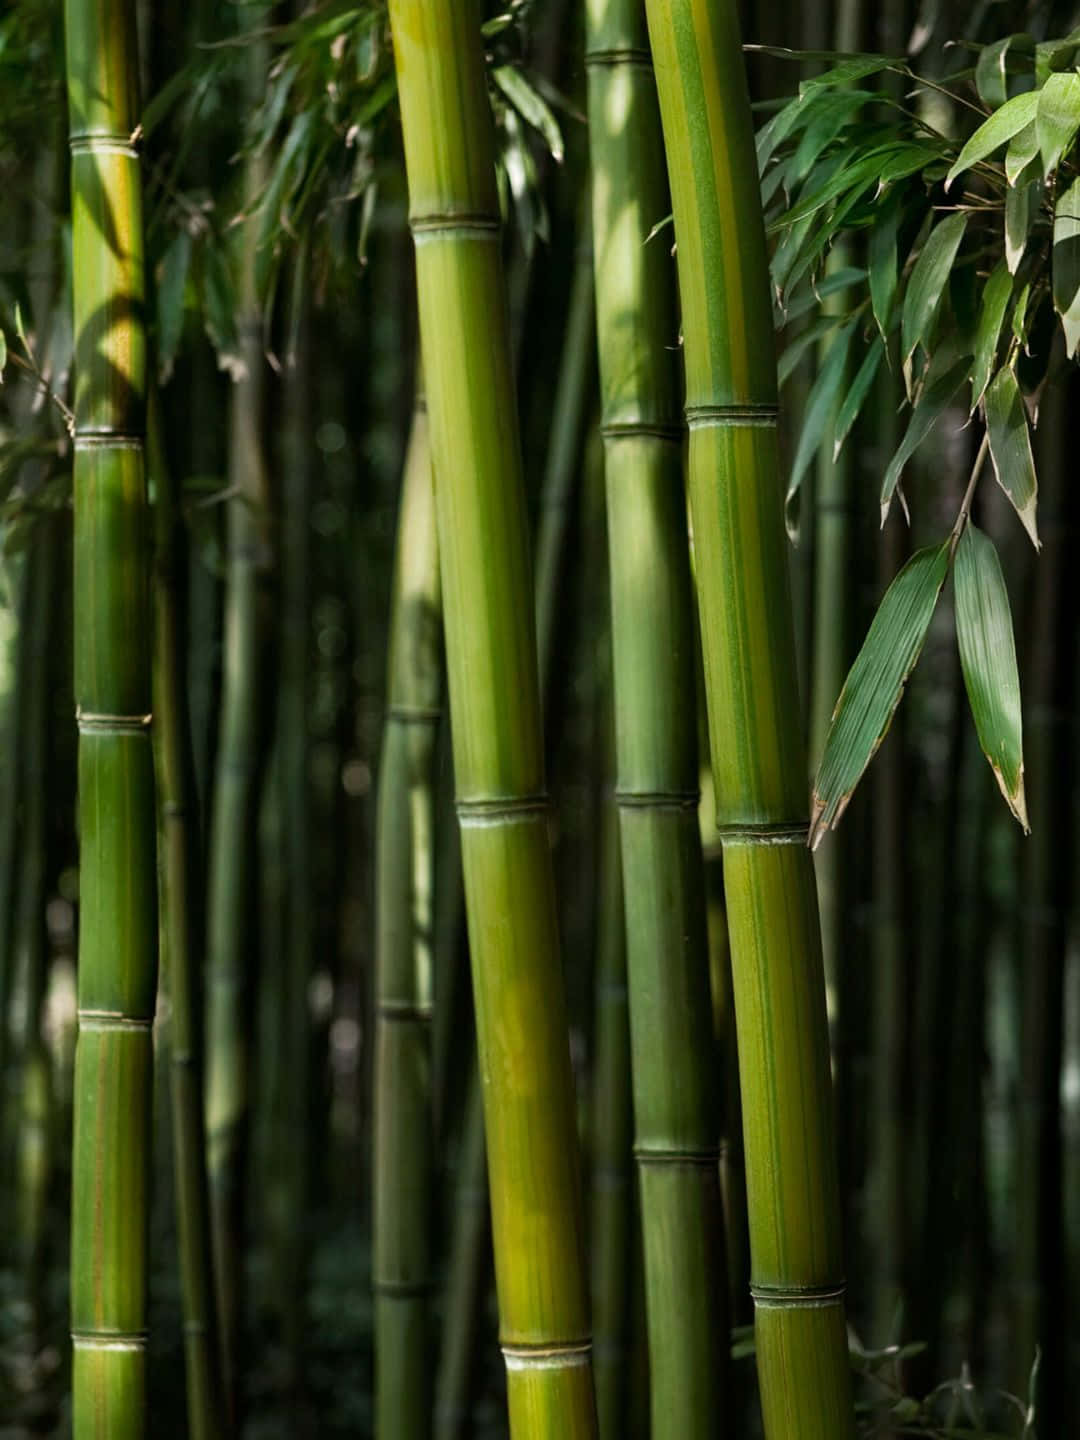 Fundode Tela De Bambu Em 1440p, Caules E Folhas Muito Verde-escuros.